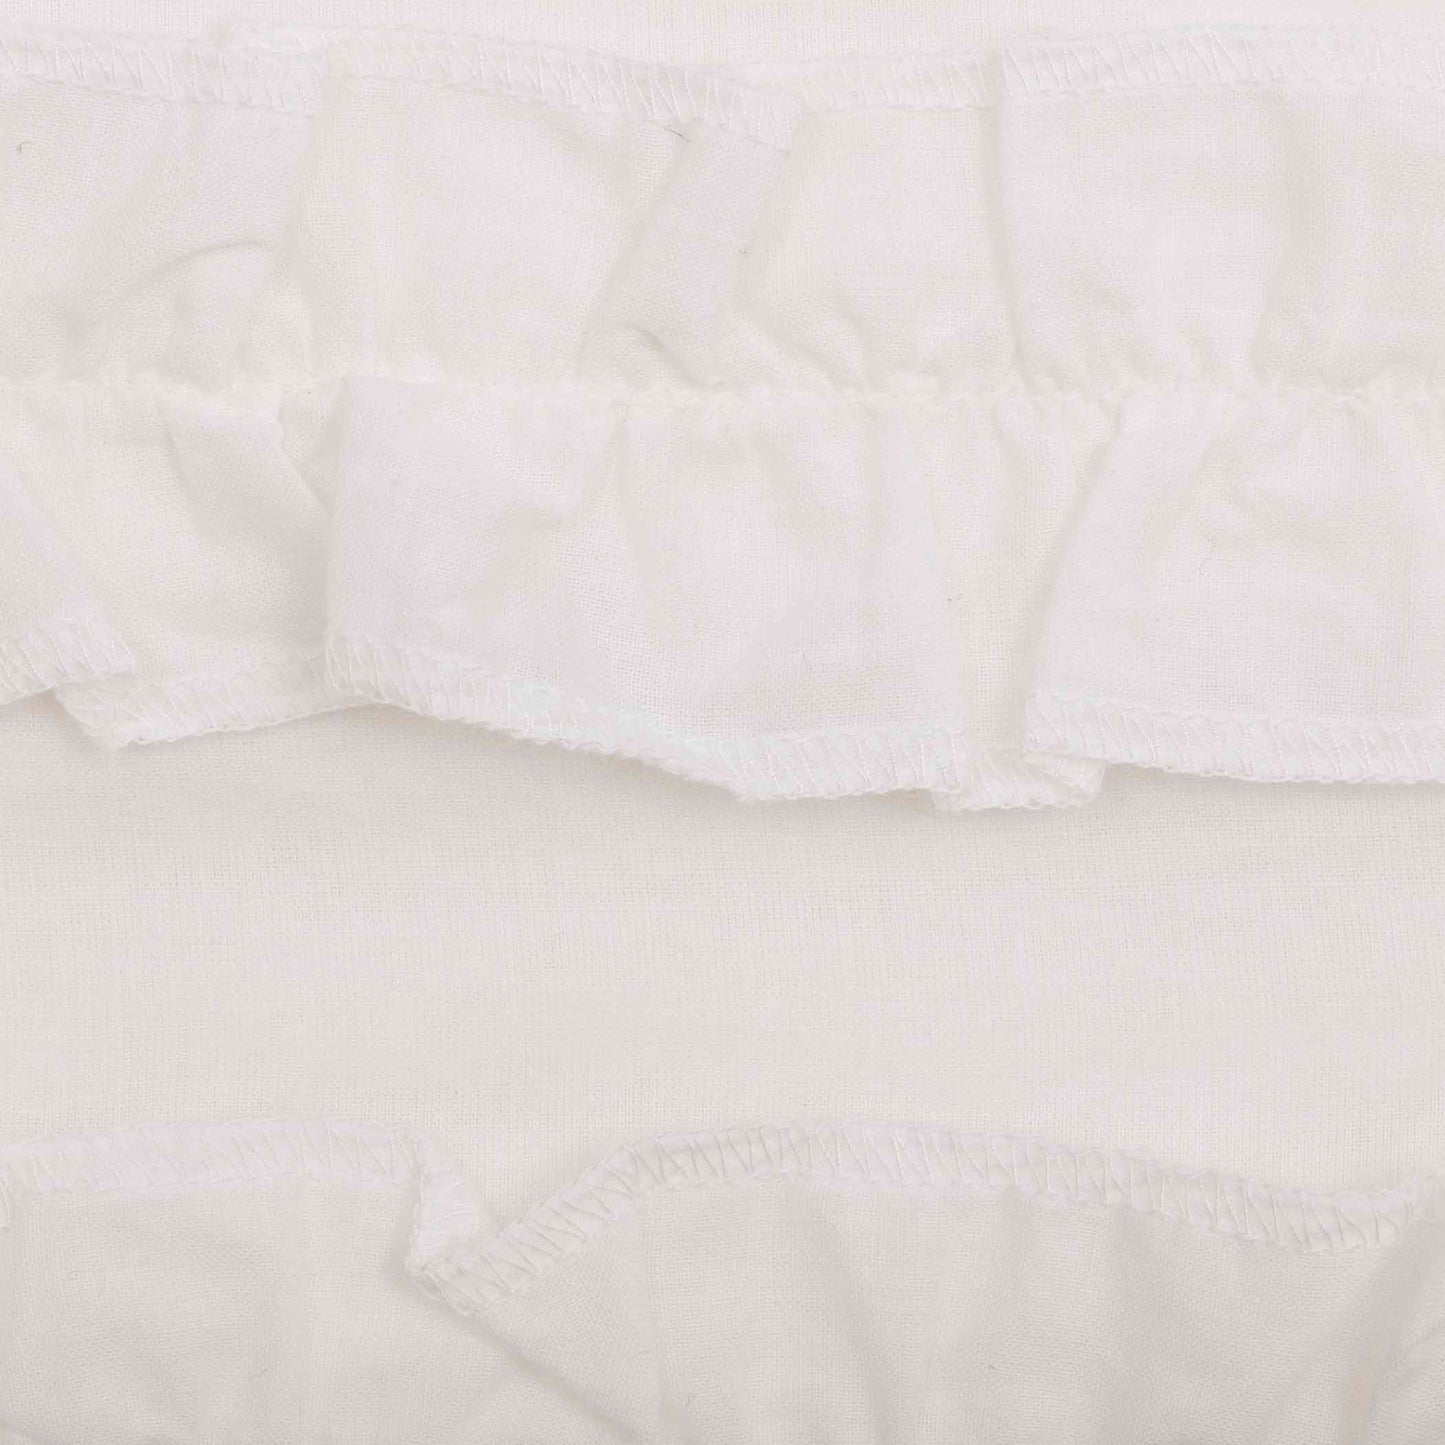 61664-White-Ruffled-Sheer-Petticoat-Door-Panel-72x40-image-8